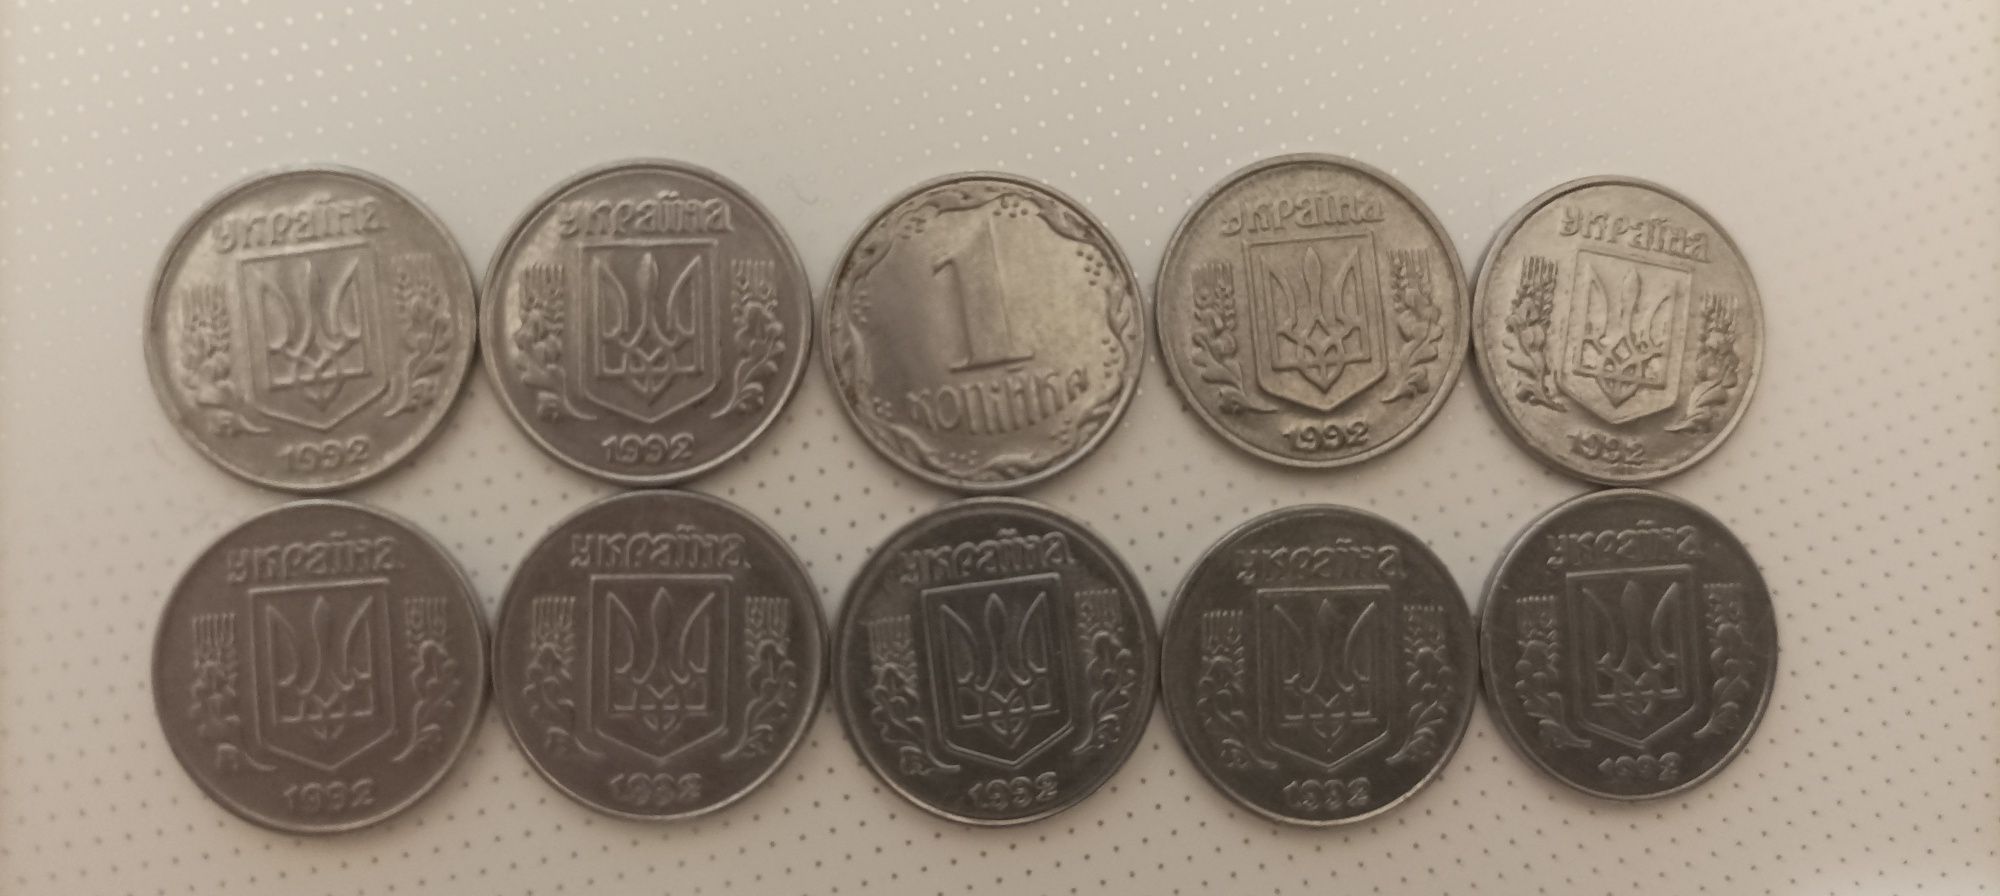 Продам монеты Украины-1 копейка 1992 года,10 шт.